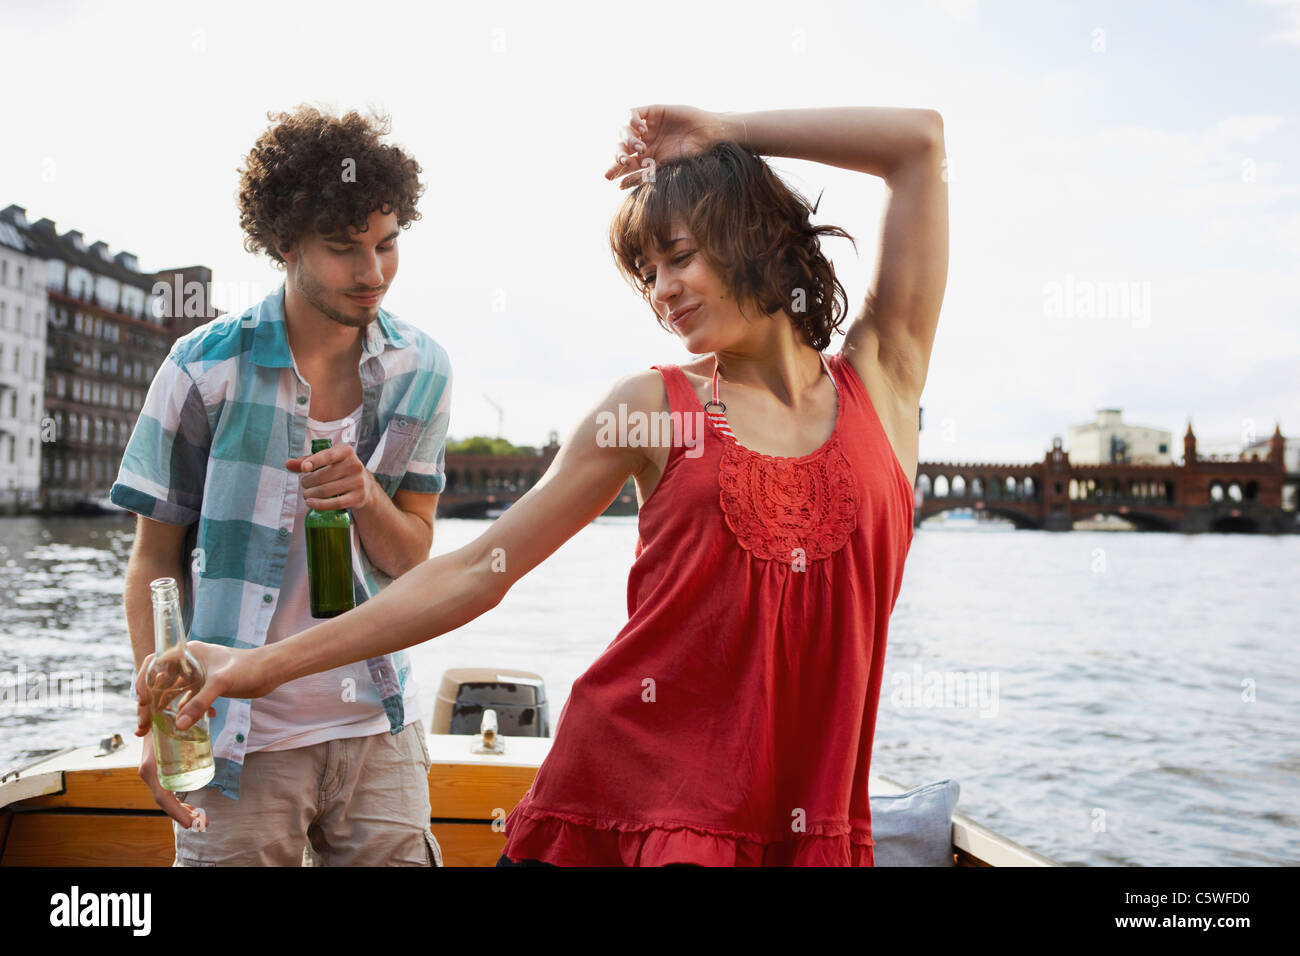 Germania, Berlino, giovane coppia in motoscafo, uomo guardando woman dancing, ritratto Foto Stock